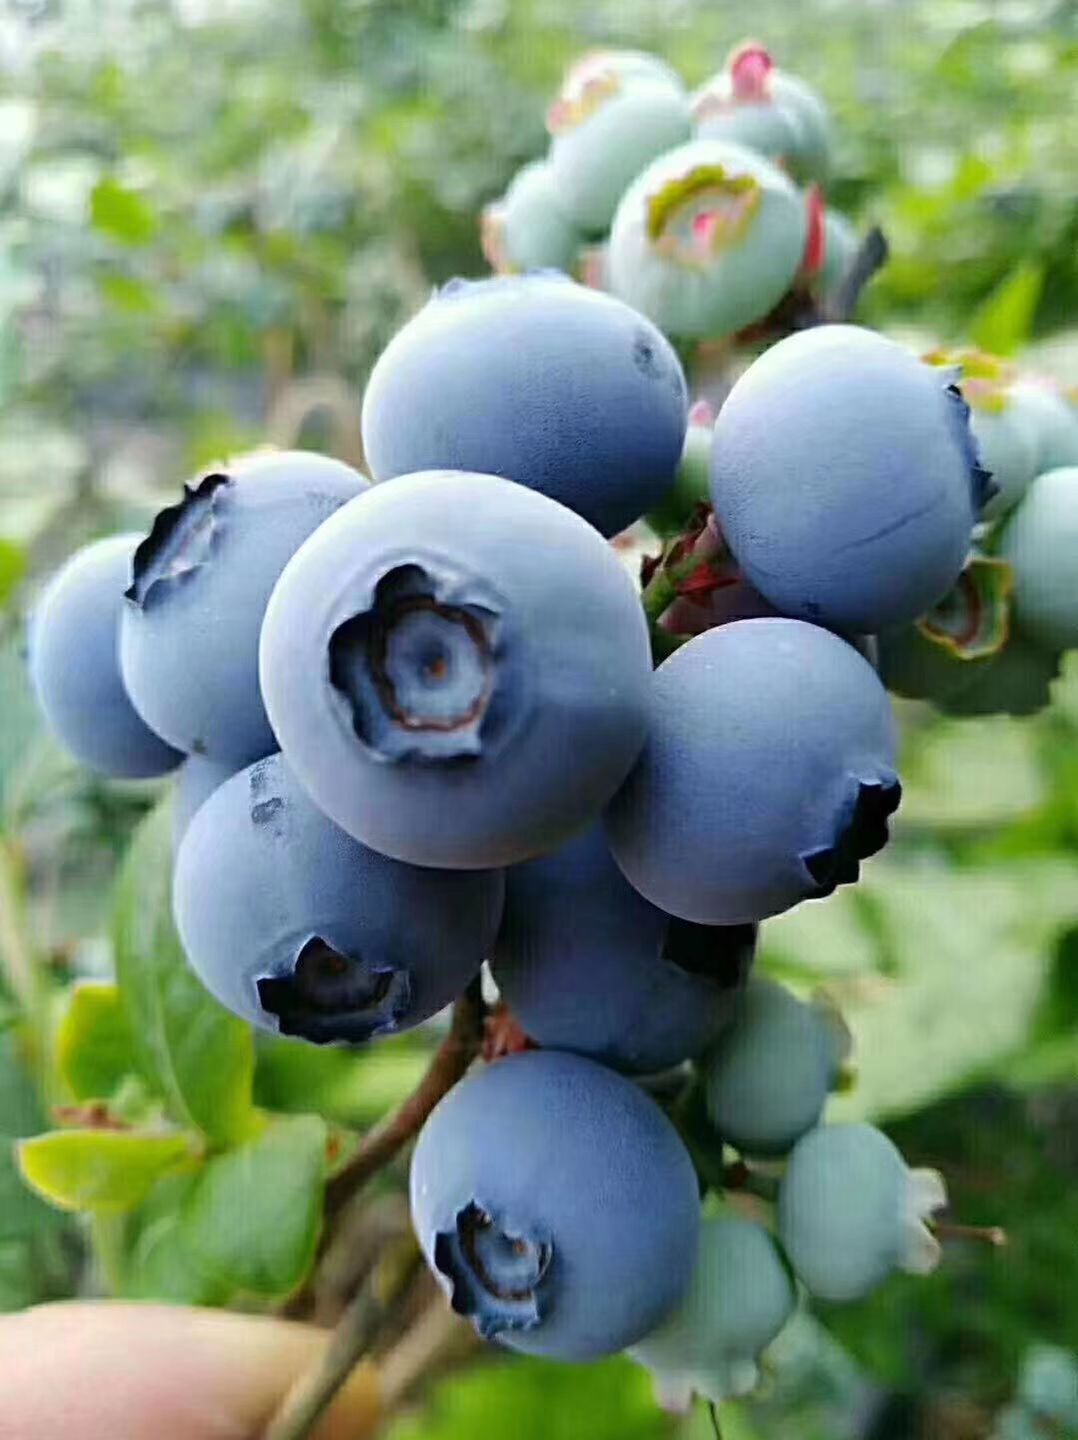 中国北极蓝莓图片